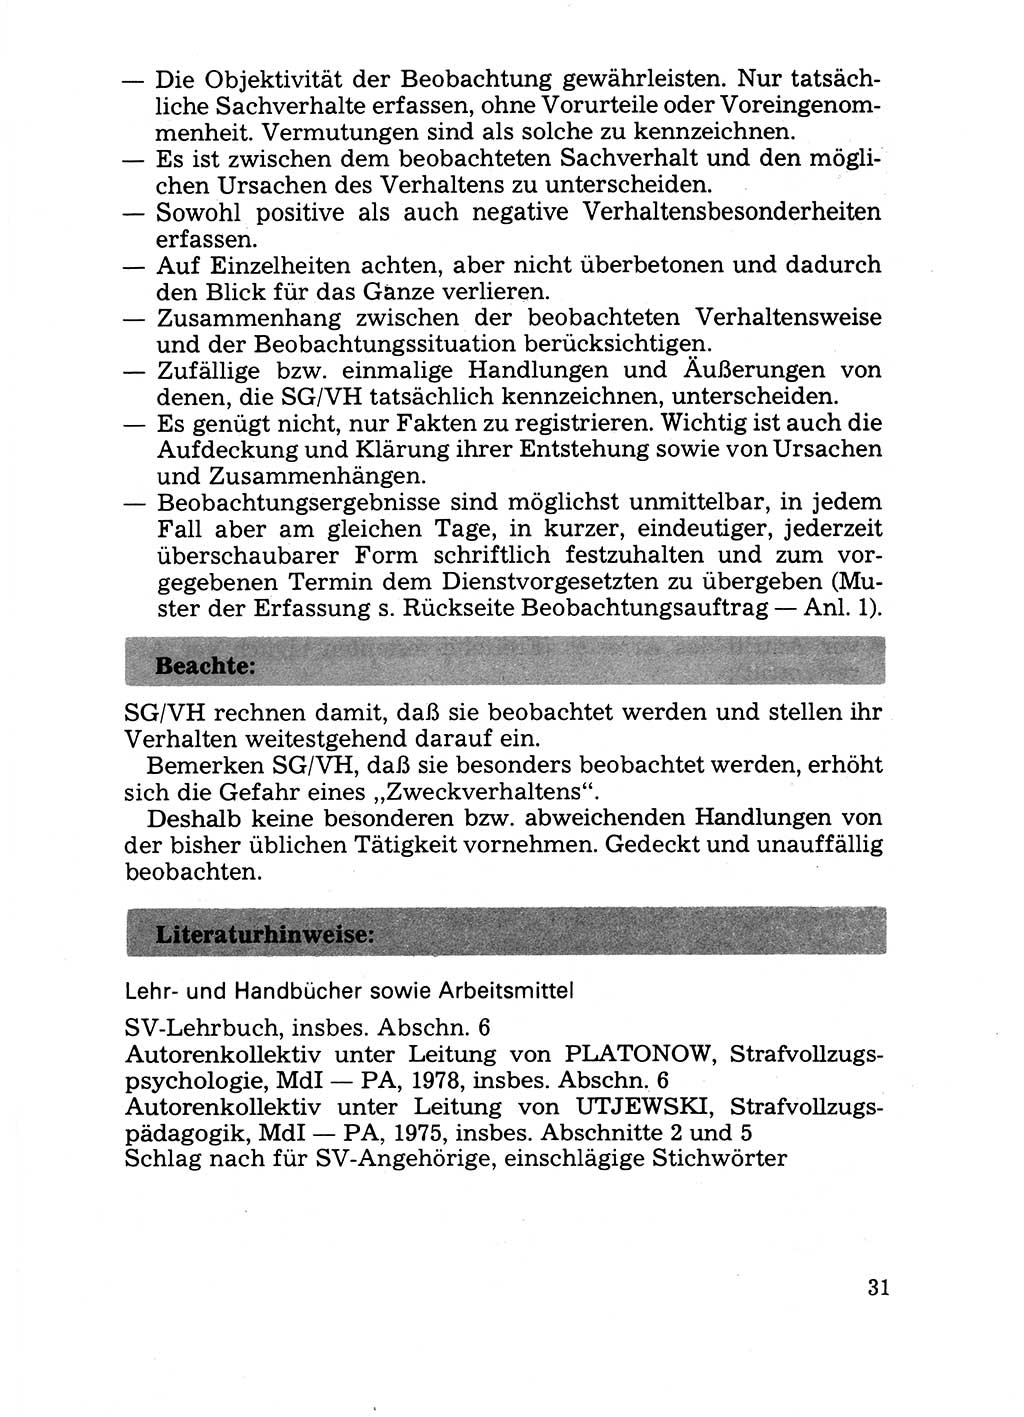 Handbuch für operative Dienste, Abteilung Strafvollzug (SV) [Ministerium des Innern (MdI) Deutsche Demokratische Republik (DDR)] 1981, Seite 31 (Hb. op. D. Abt. SV MdI DDR 1981, S. 31)